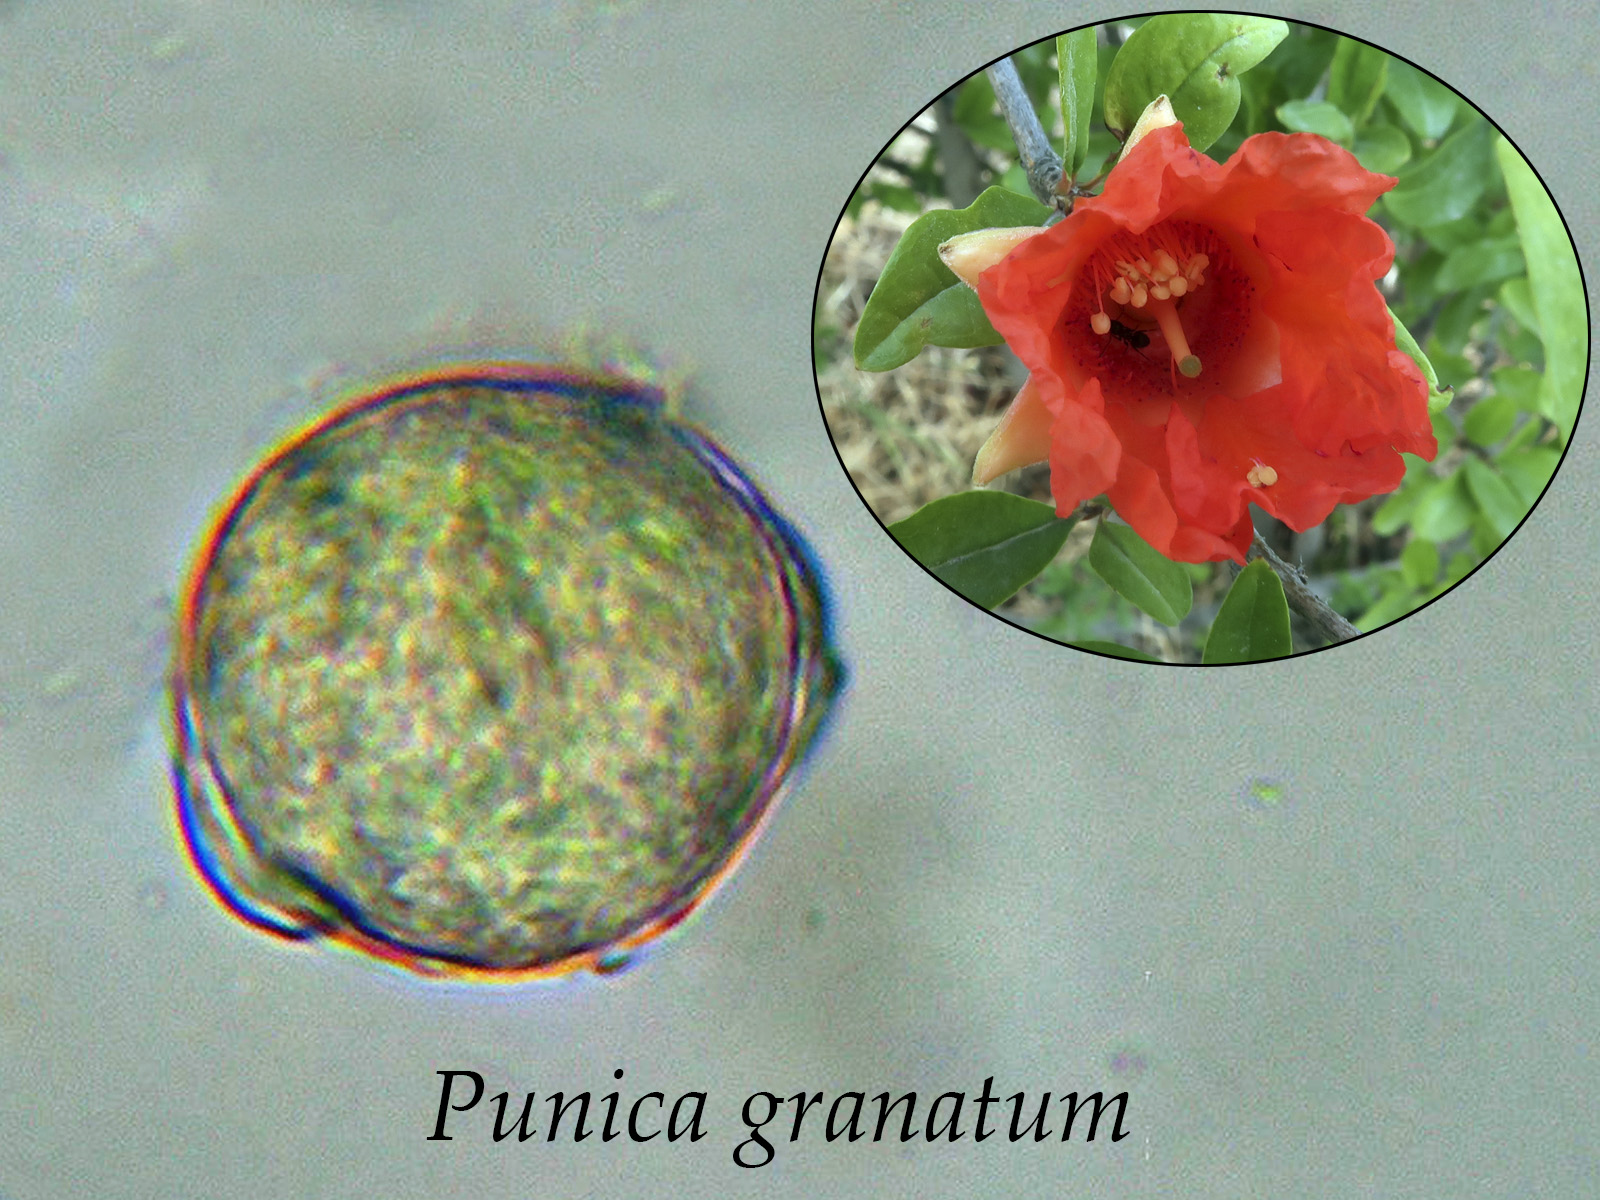 Punicagranatum.jpg